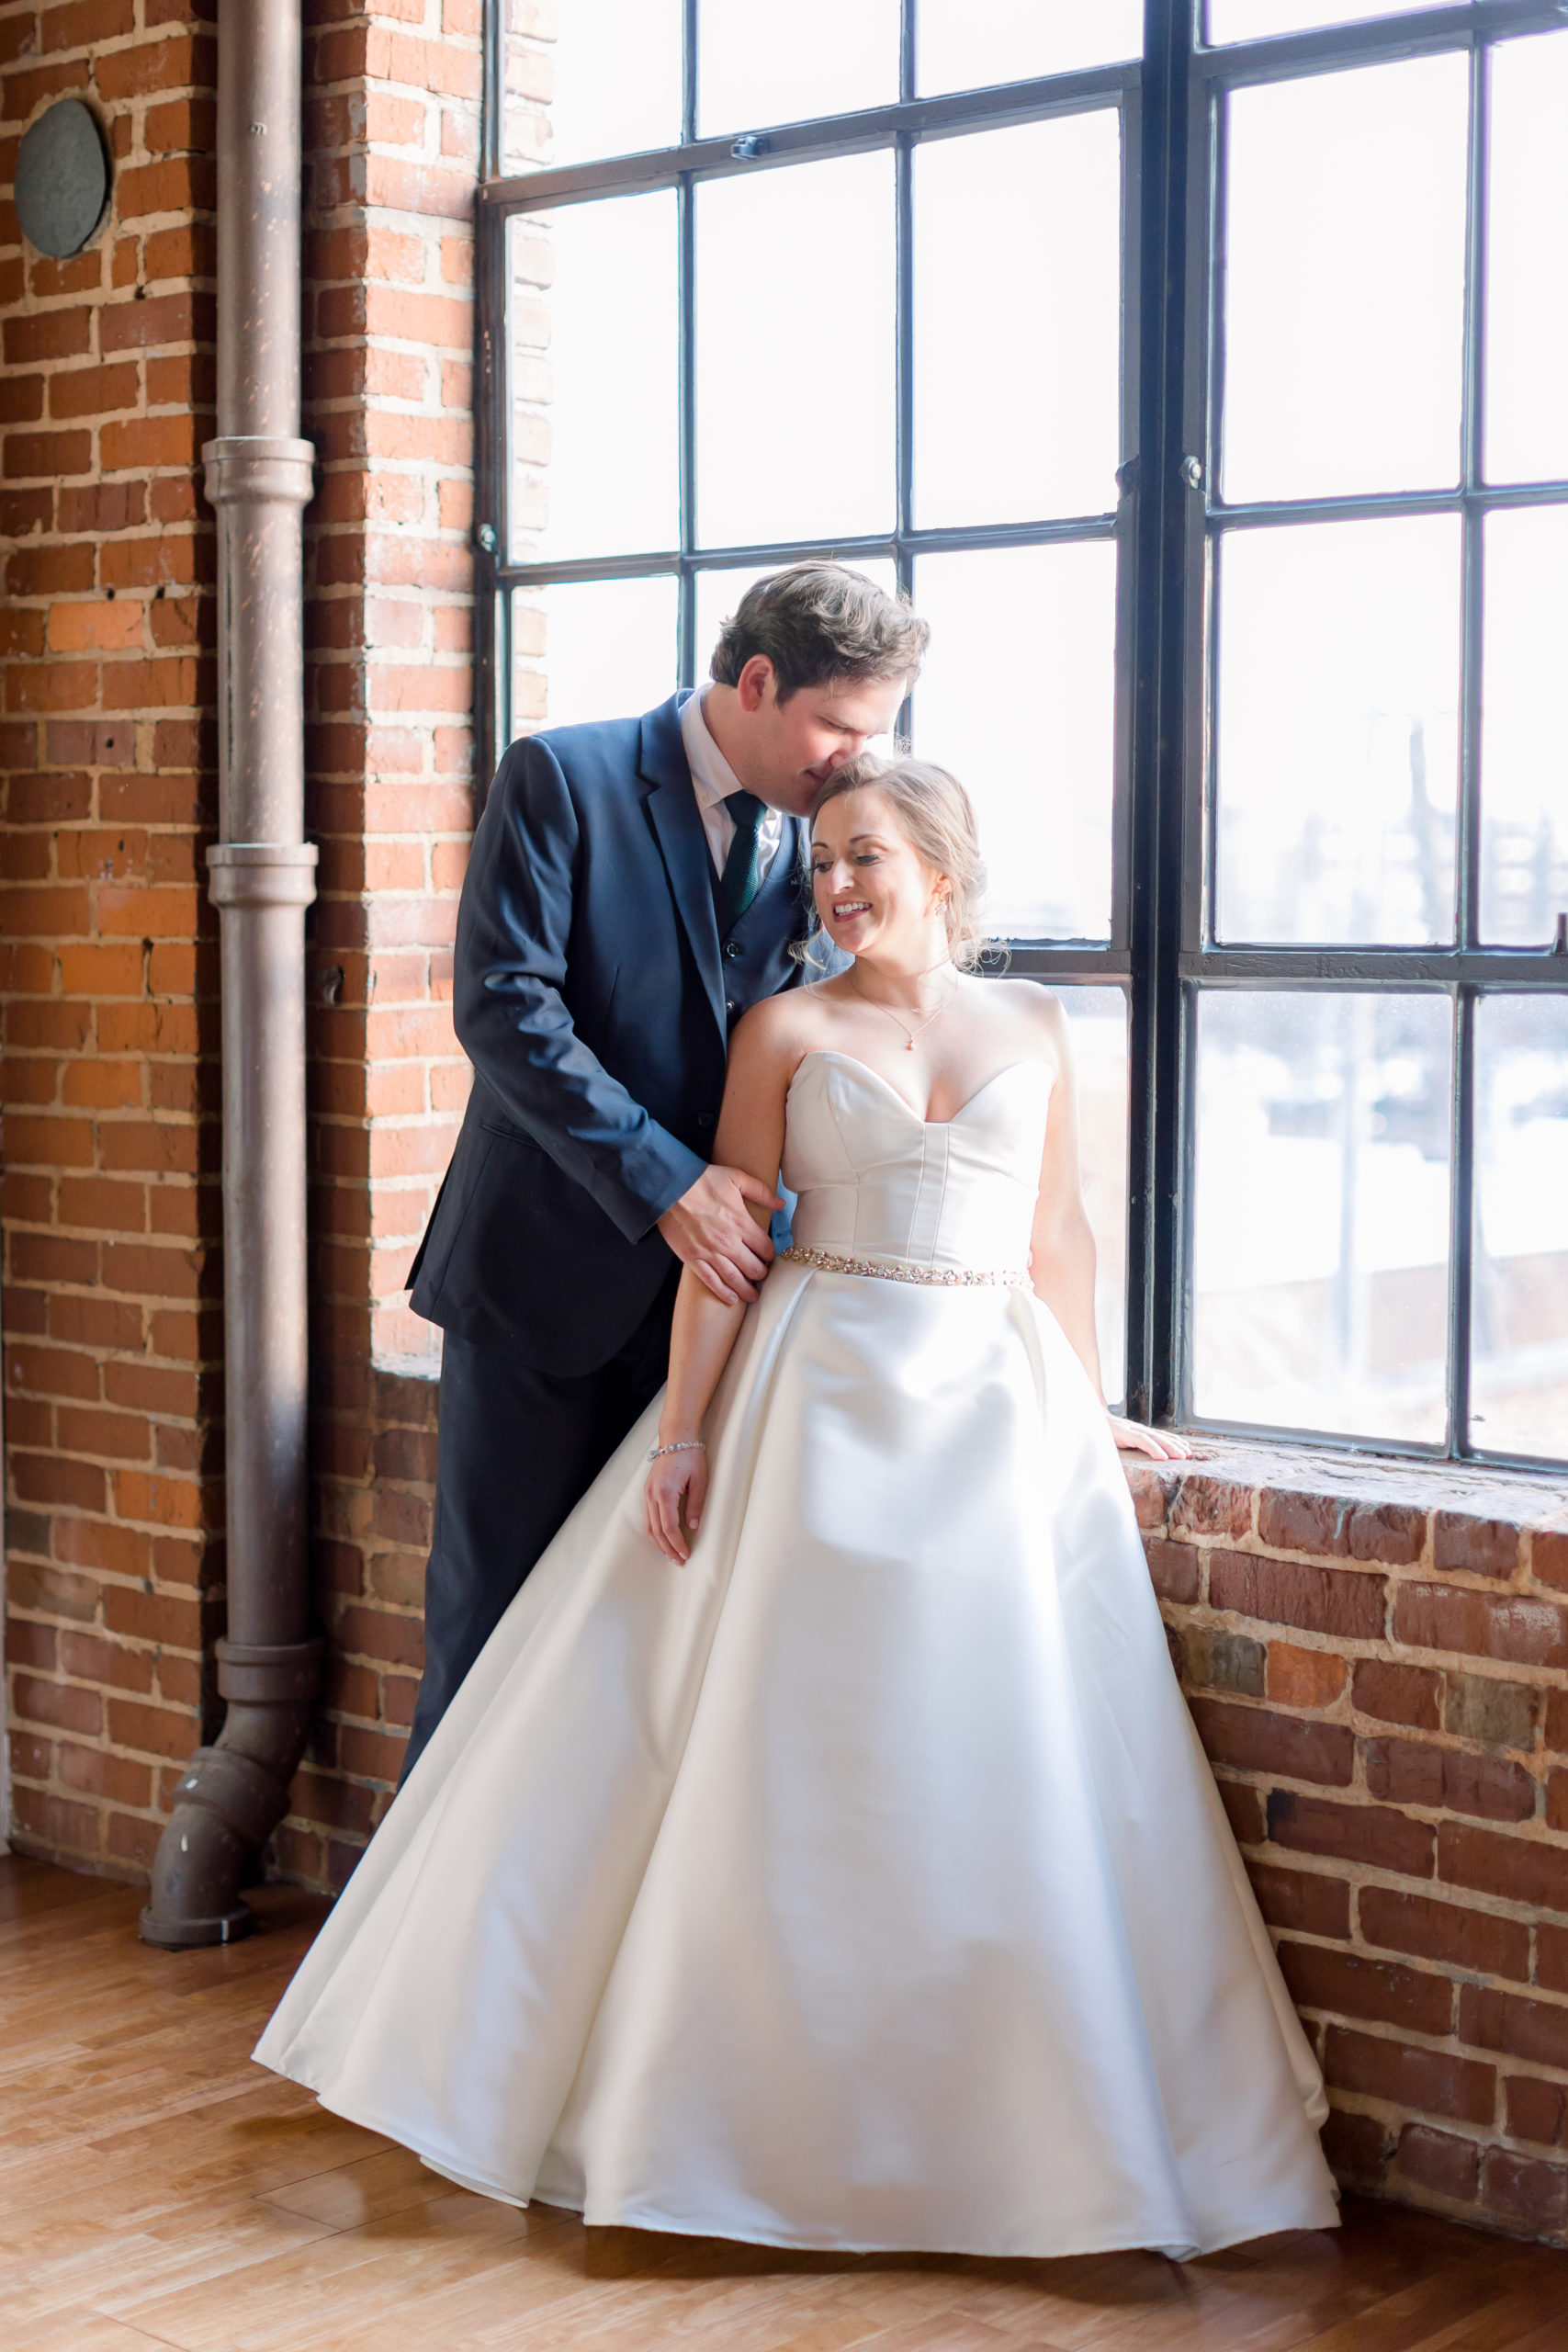 The Turnbull: Wedding Venue Highlight by Alyssa Rachelle Photography.